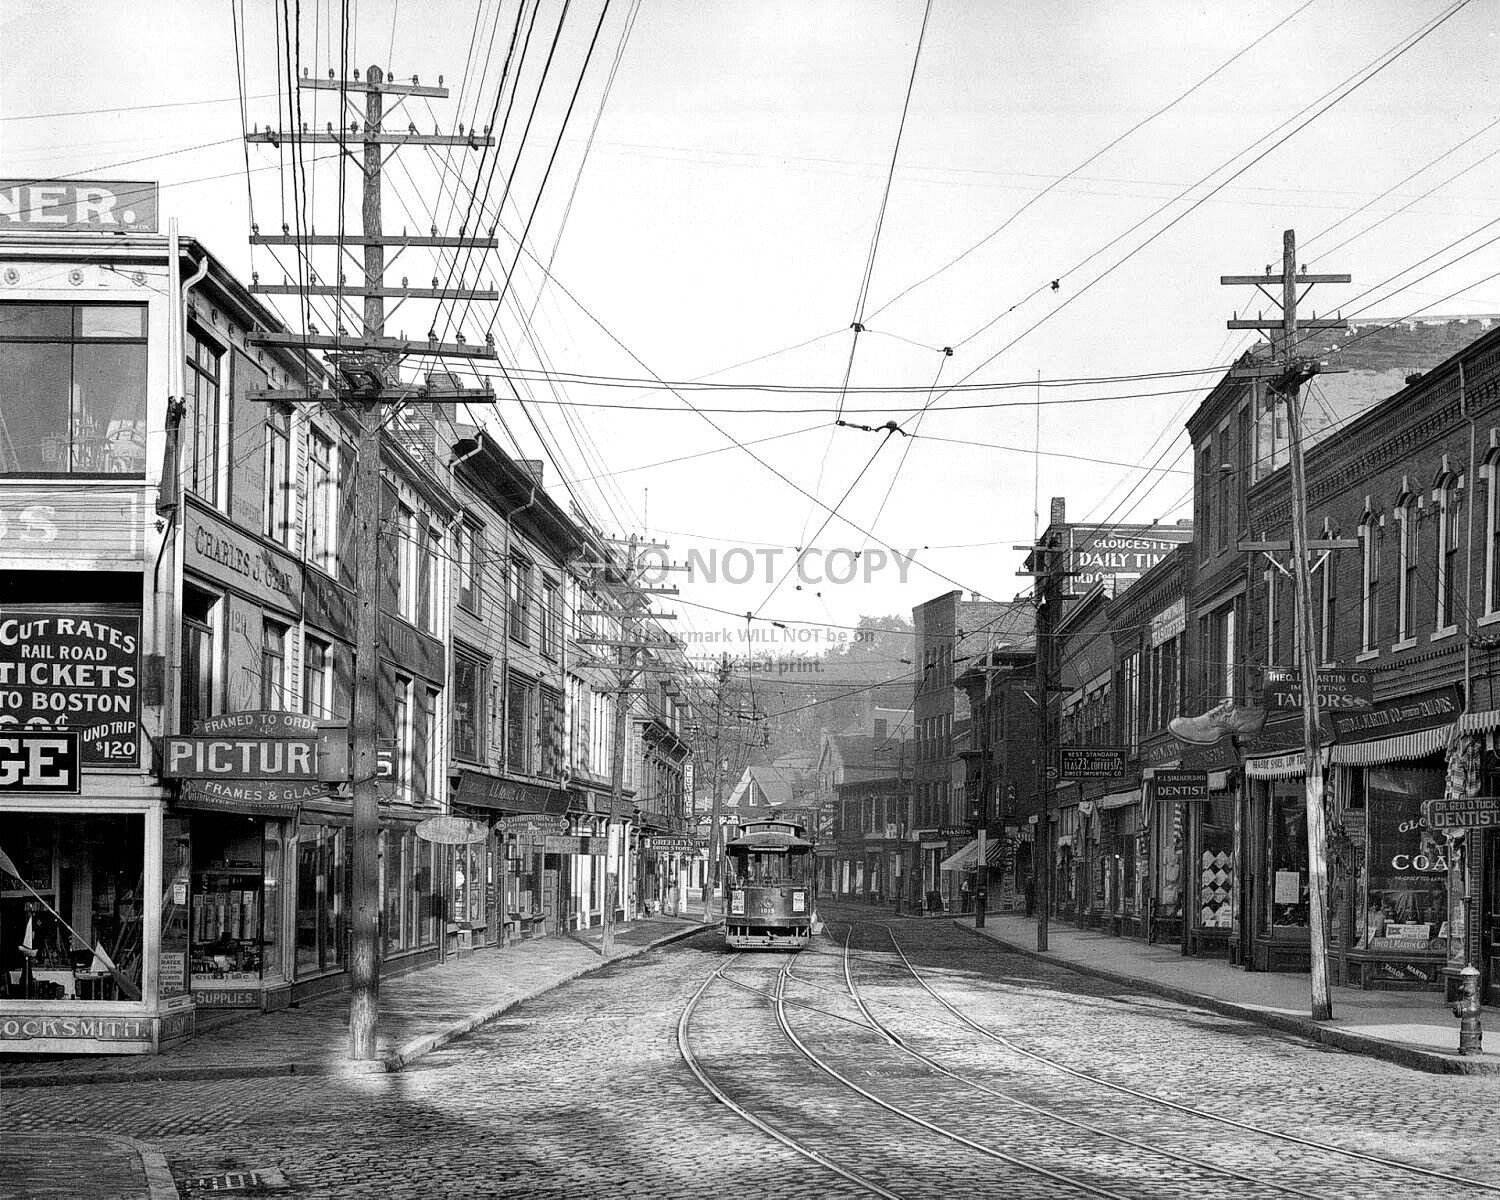 MAIN STREET IN GLOUCESTER, MASSACHUSETTS, CIRCA 1905 - 8X10 PHOTO (AA-654)